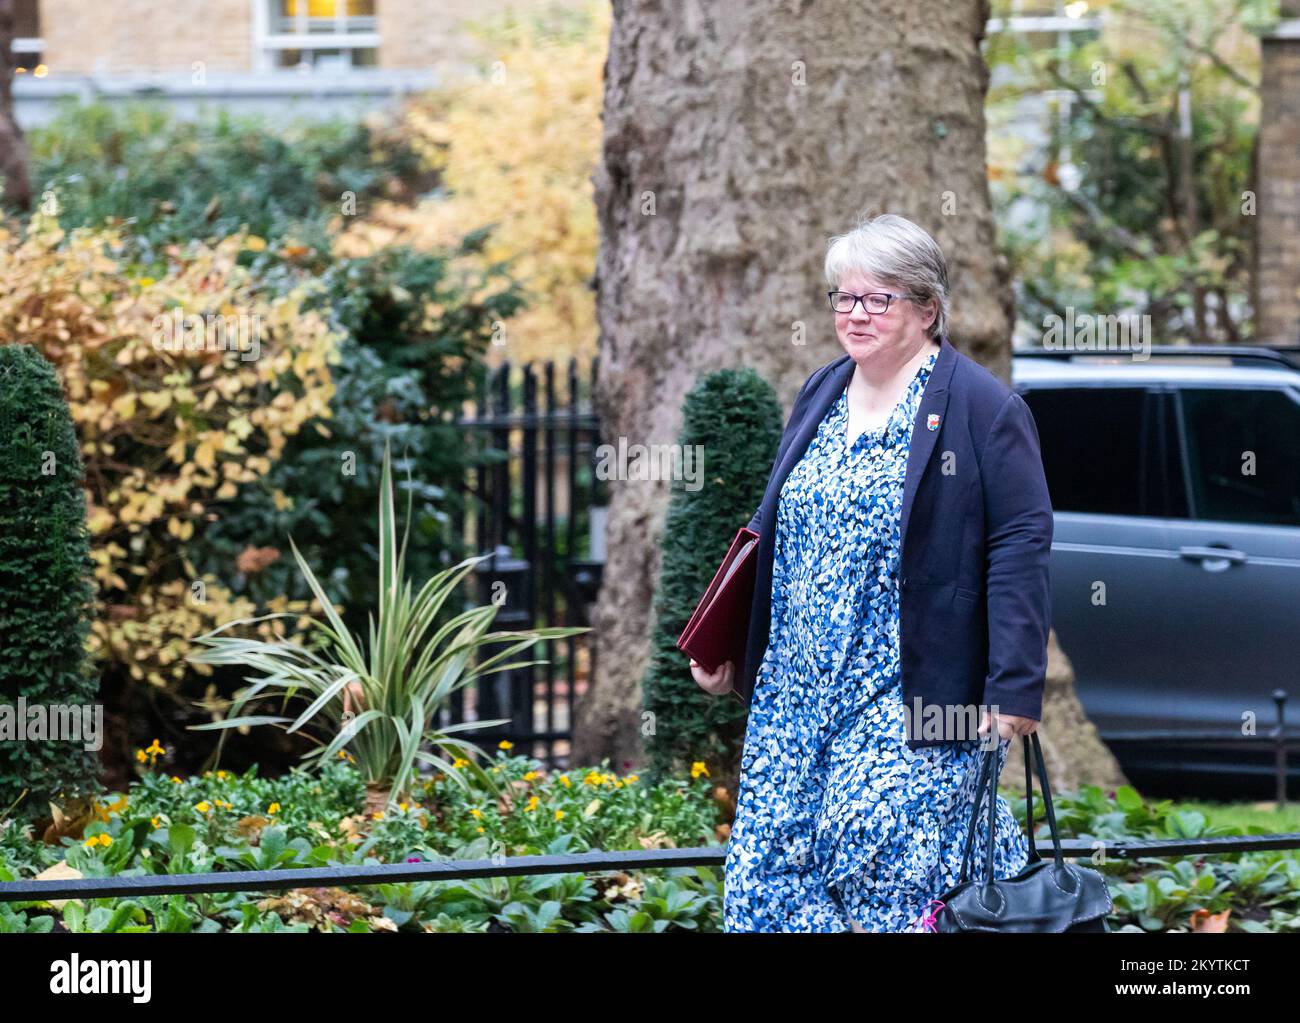 Thérèse Coffey, secrétaire d'État à l'Environnement, à l'alimentation et aux Affaires rurales, au numéro extérieur 10 Downing Street à Londres Banque D'Images